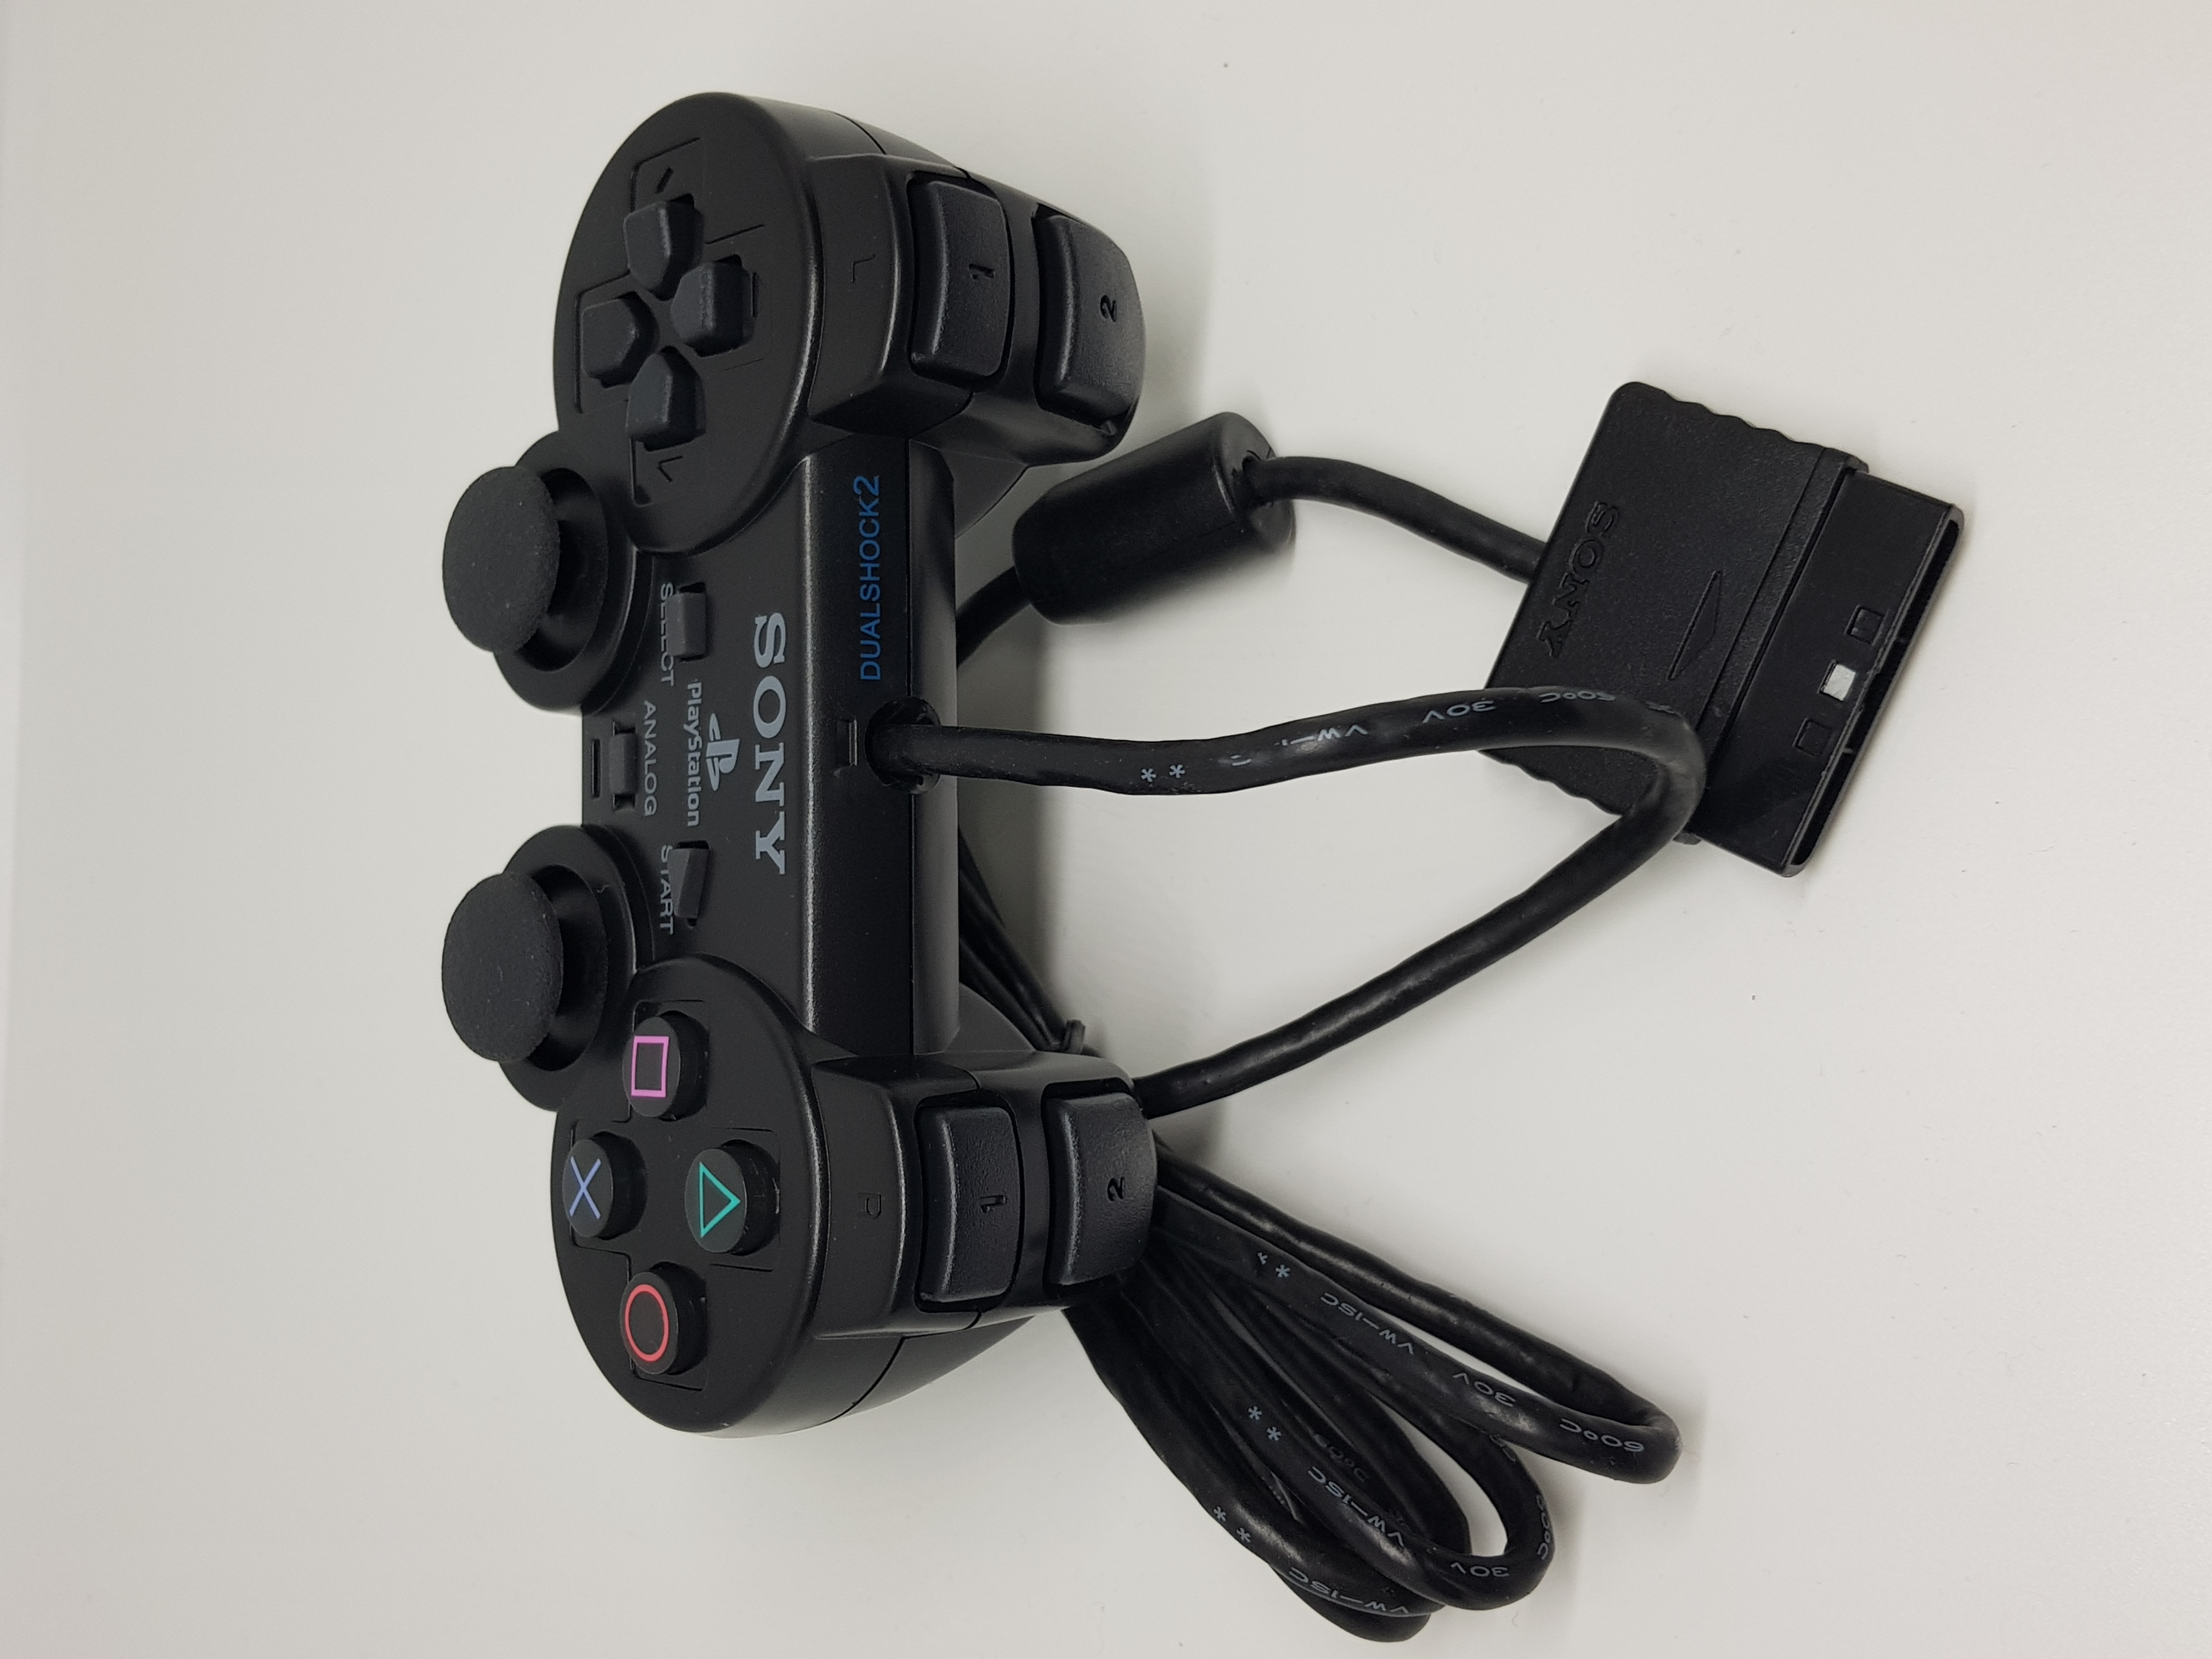 Официальные контроллеры Sony PS2 Playstation 2 восстановлены